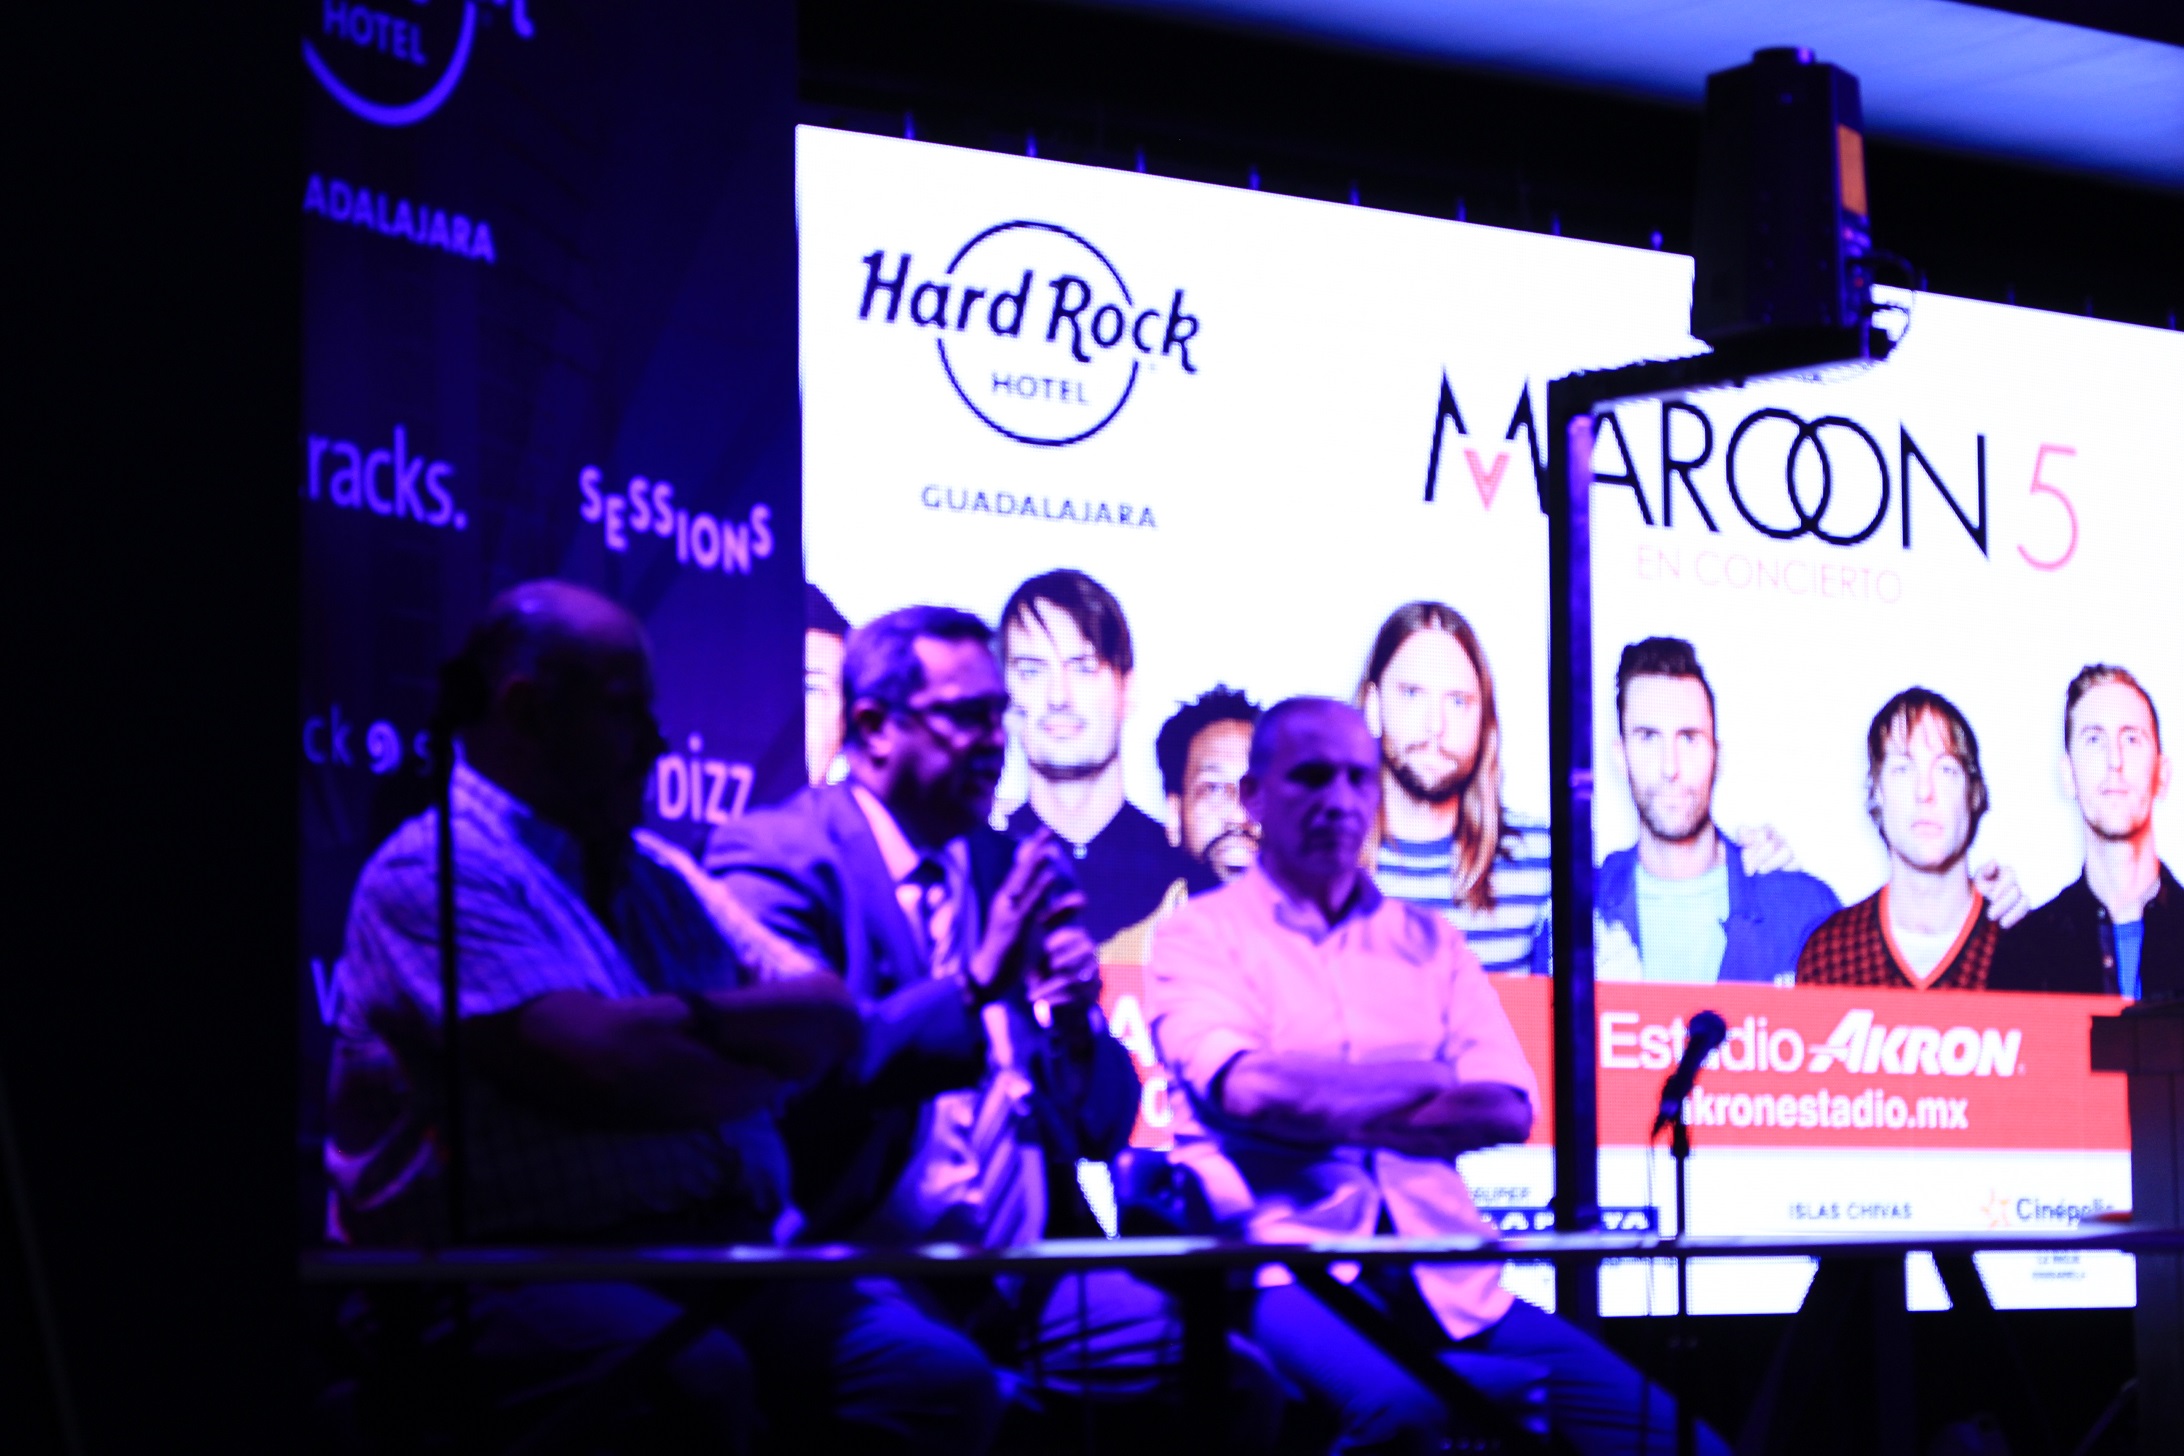 Maroon 5 En Guadalajara/Arrancan los festejos del Hard Rock Hotel